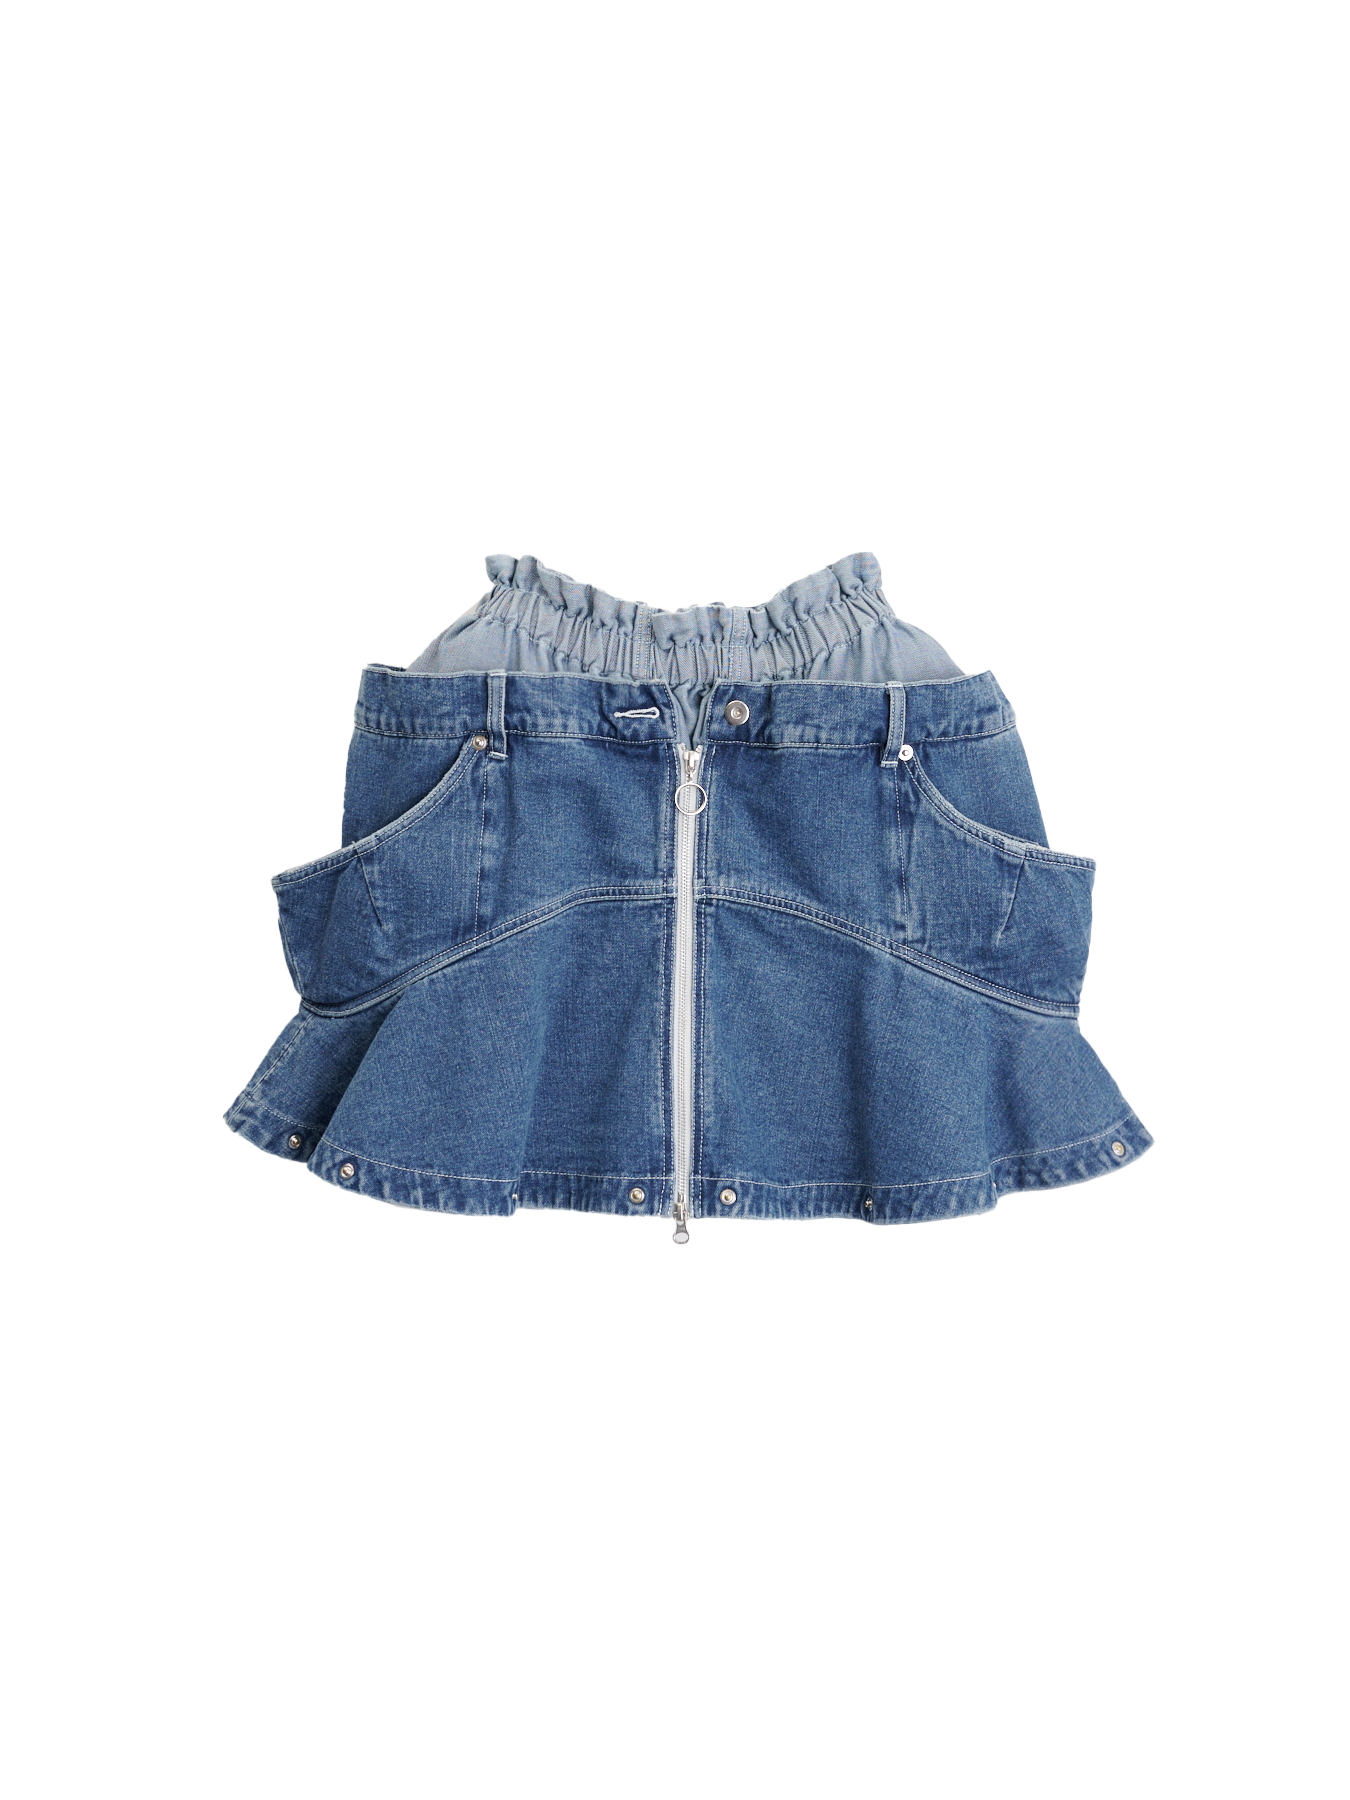 【豊富な低価】HOUGA rock skirt スカート